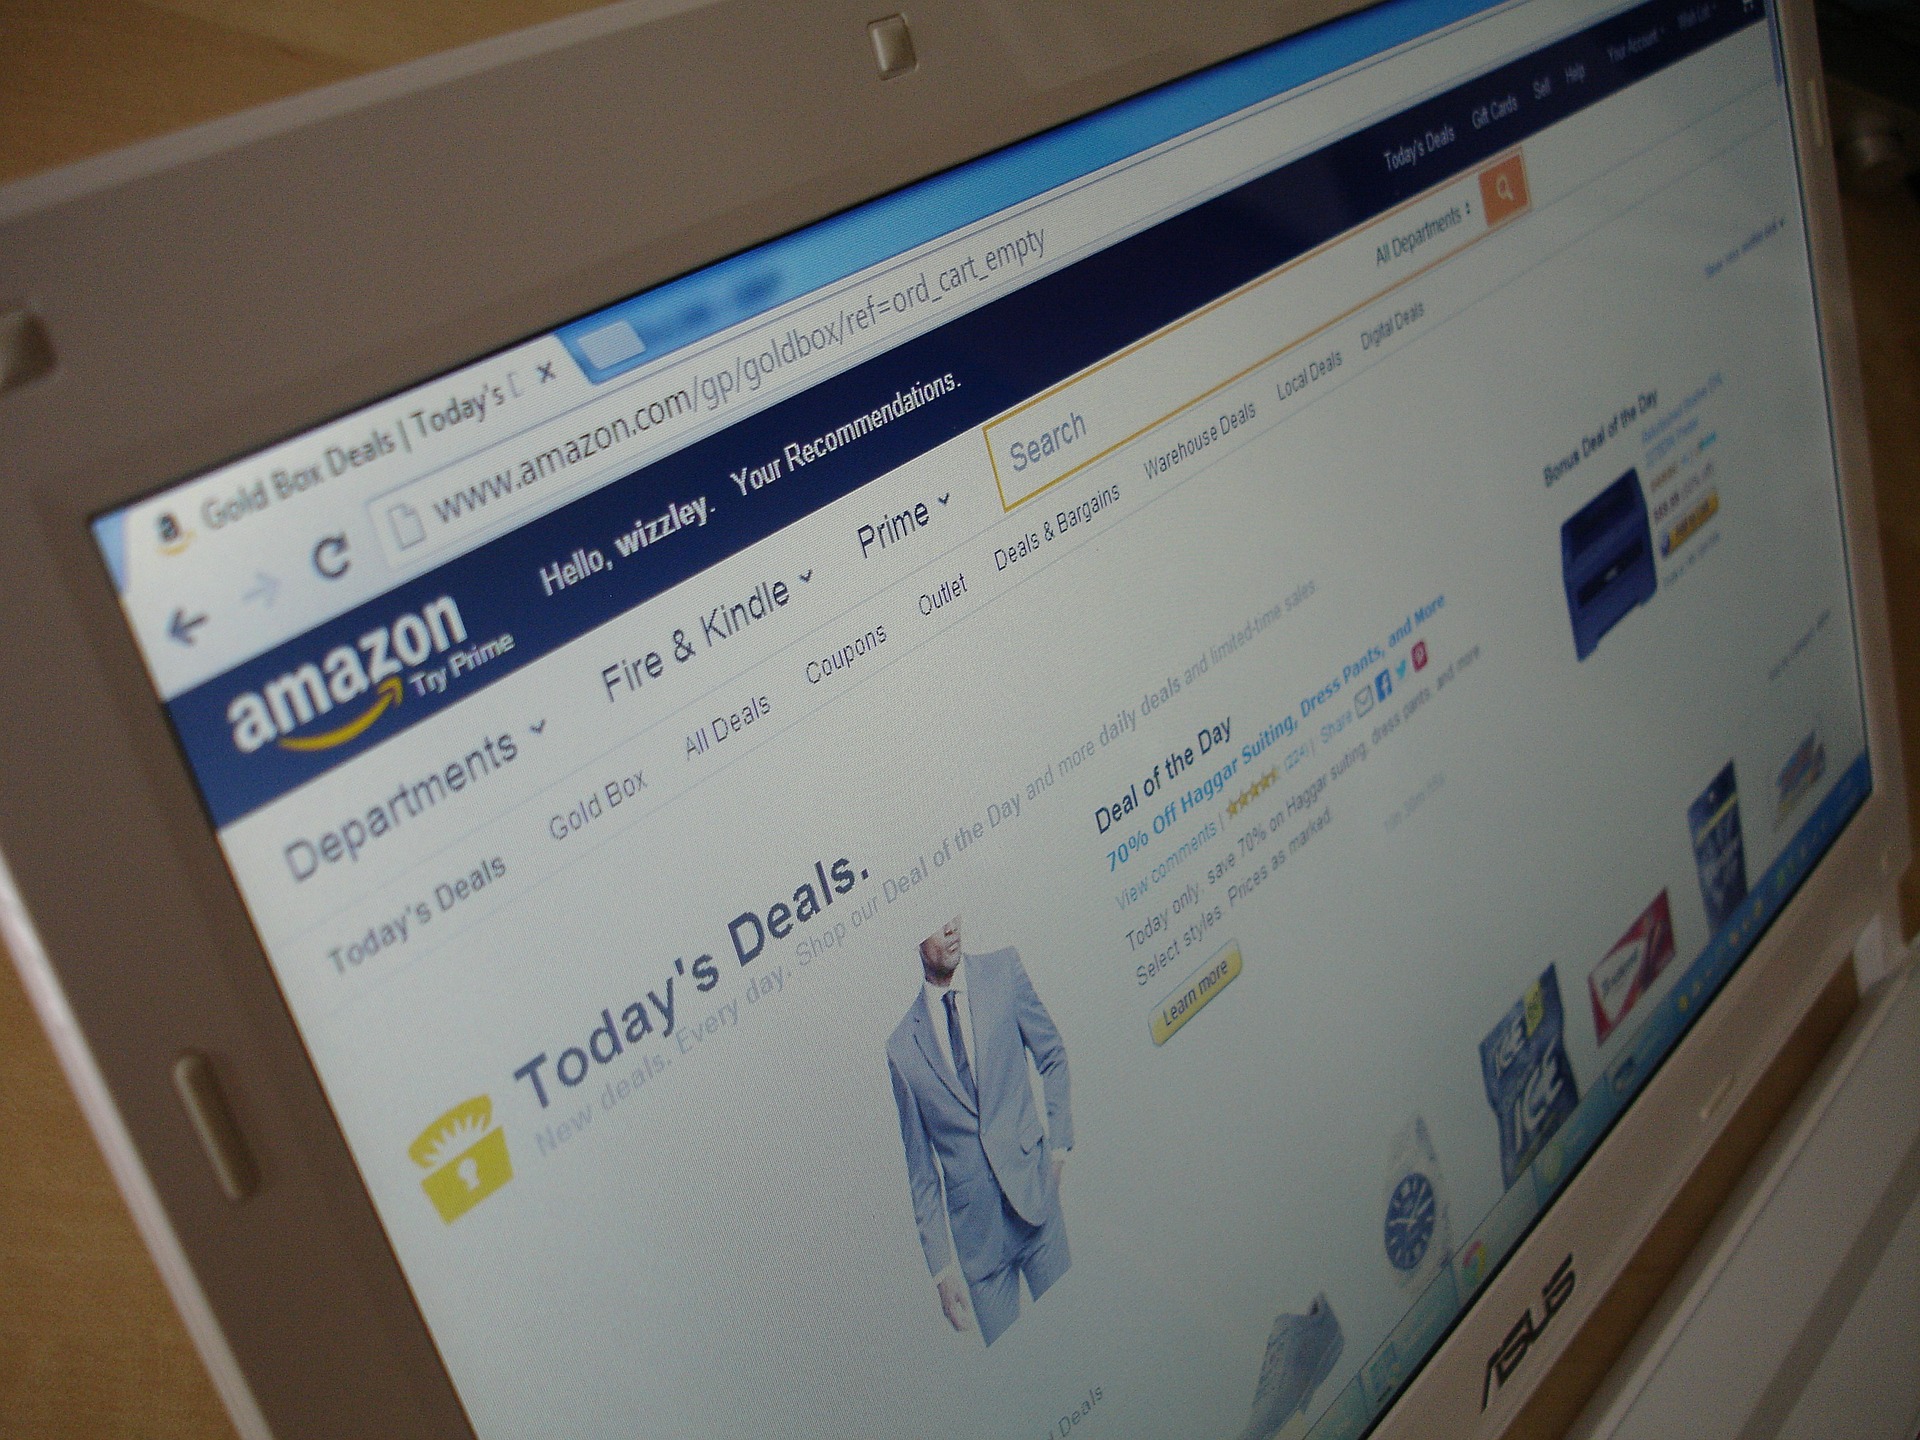 Estafas en Amazon: los modelos de fraude más comunes